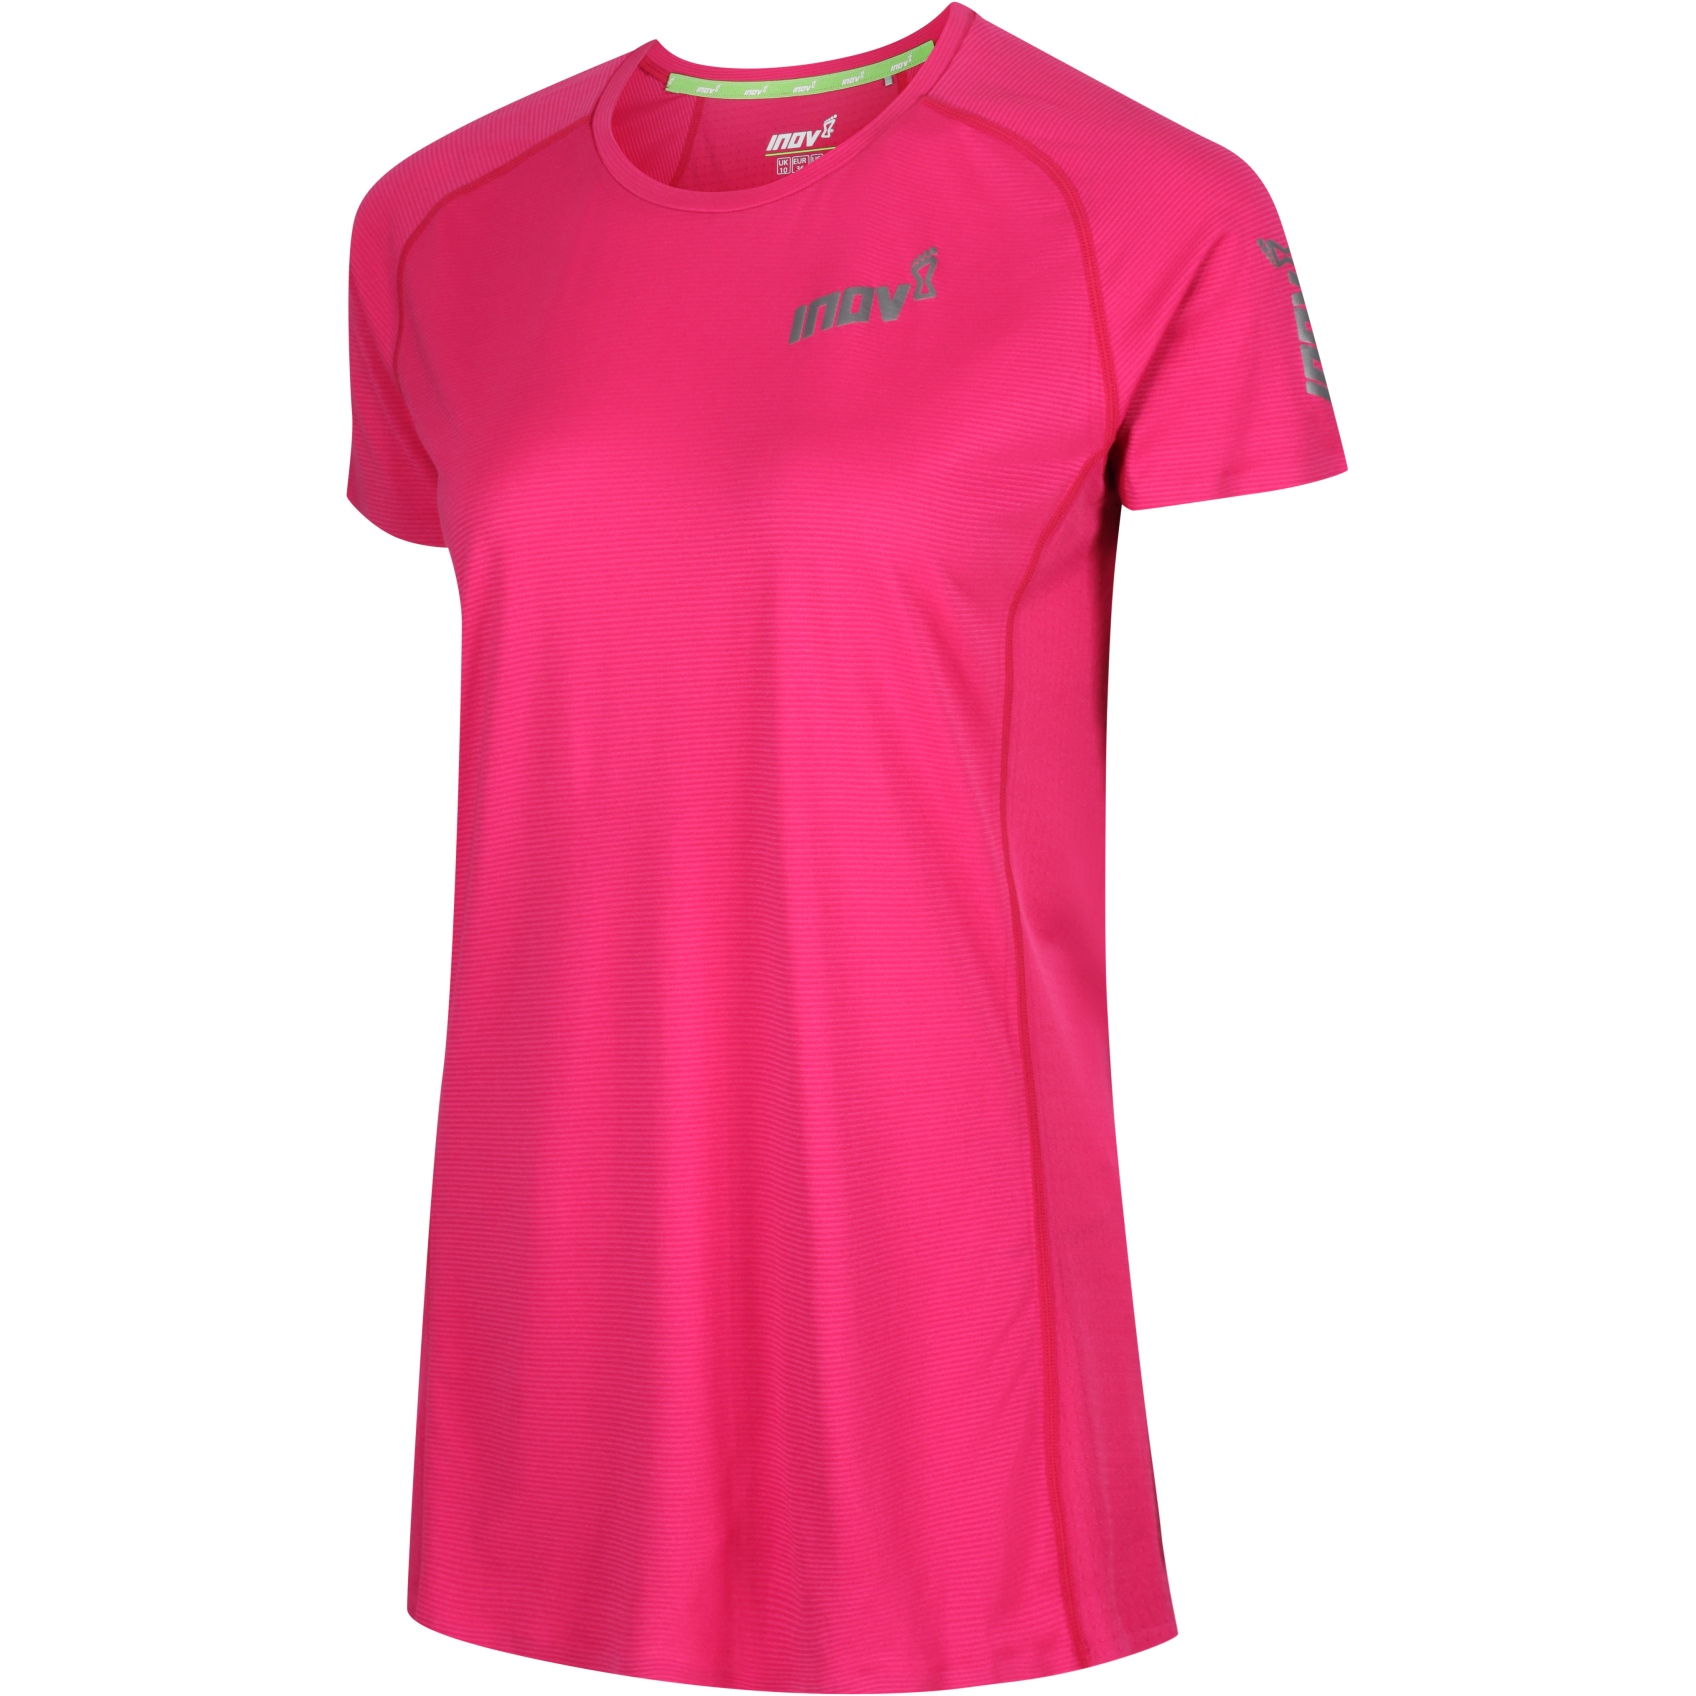 Produktbild von Inov-8 Base Elite Damen Kurzarm Laufshirt - pink